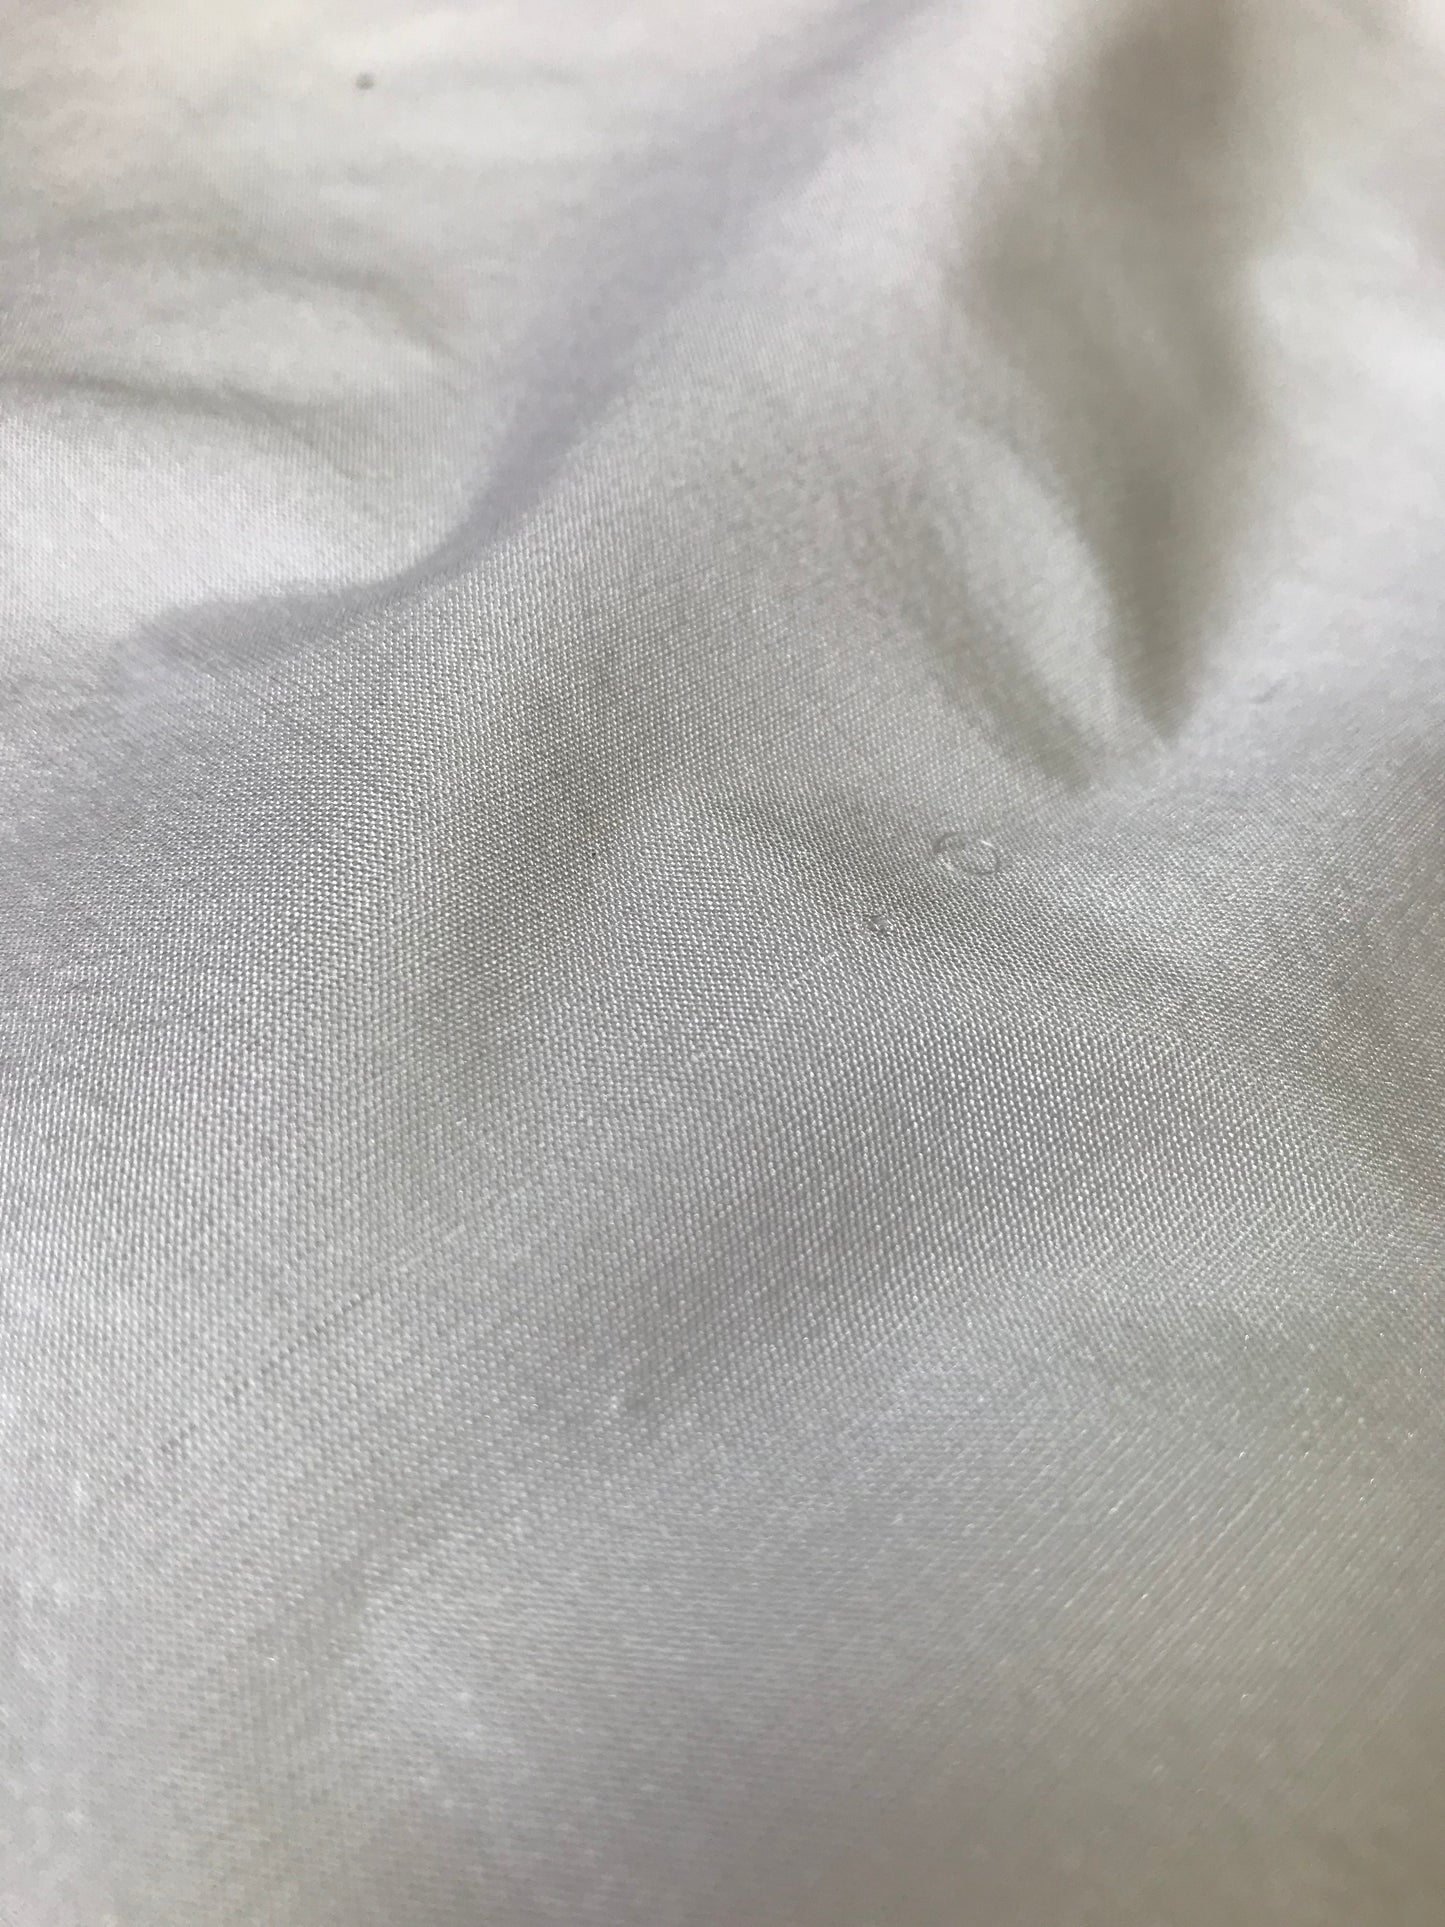 40 gm plain silk